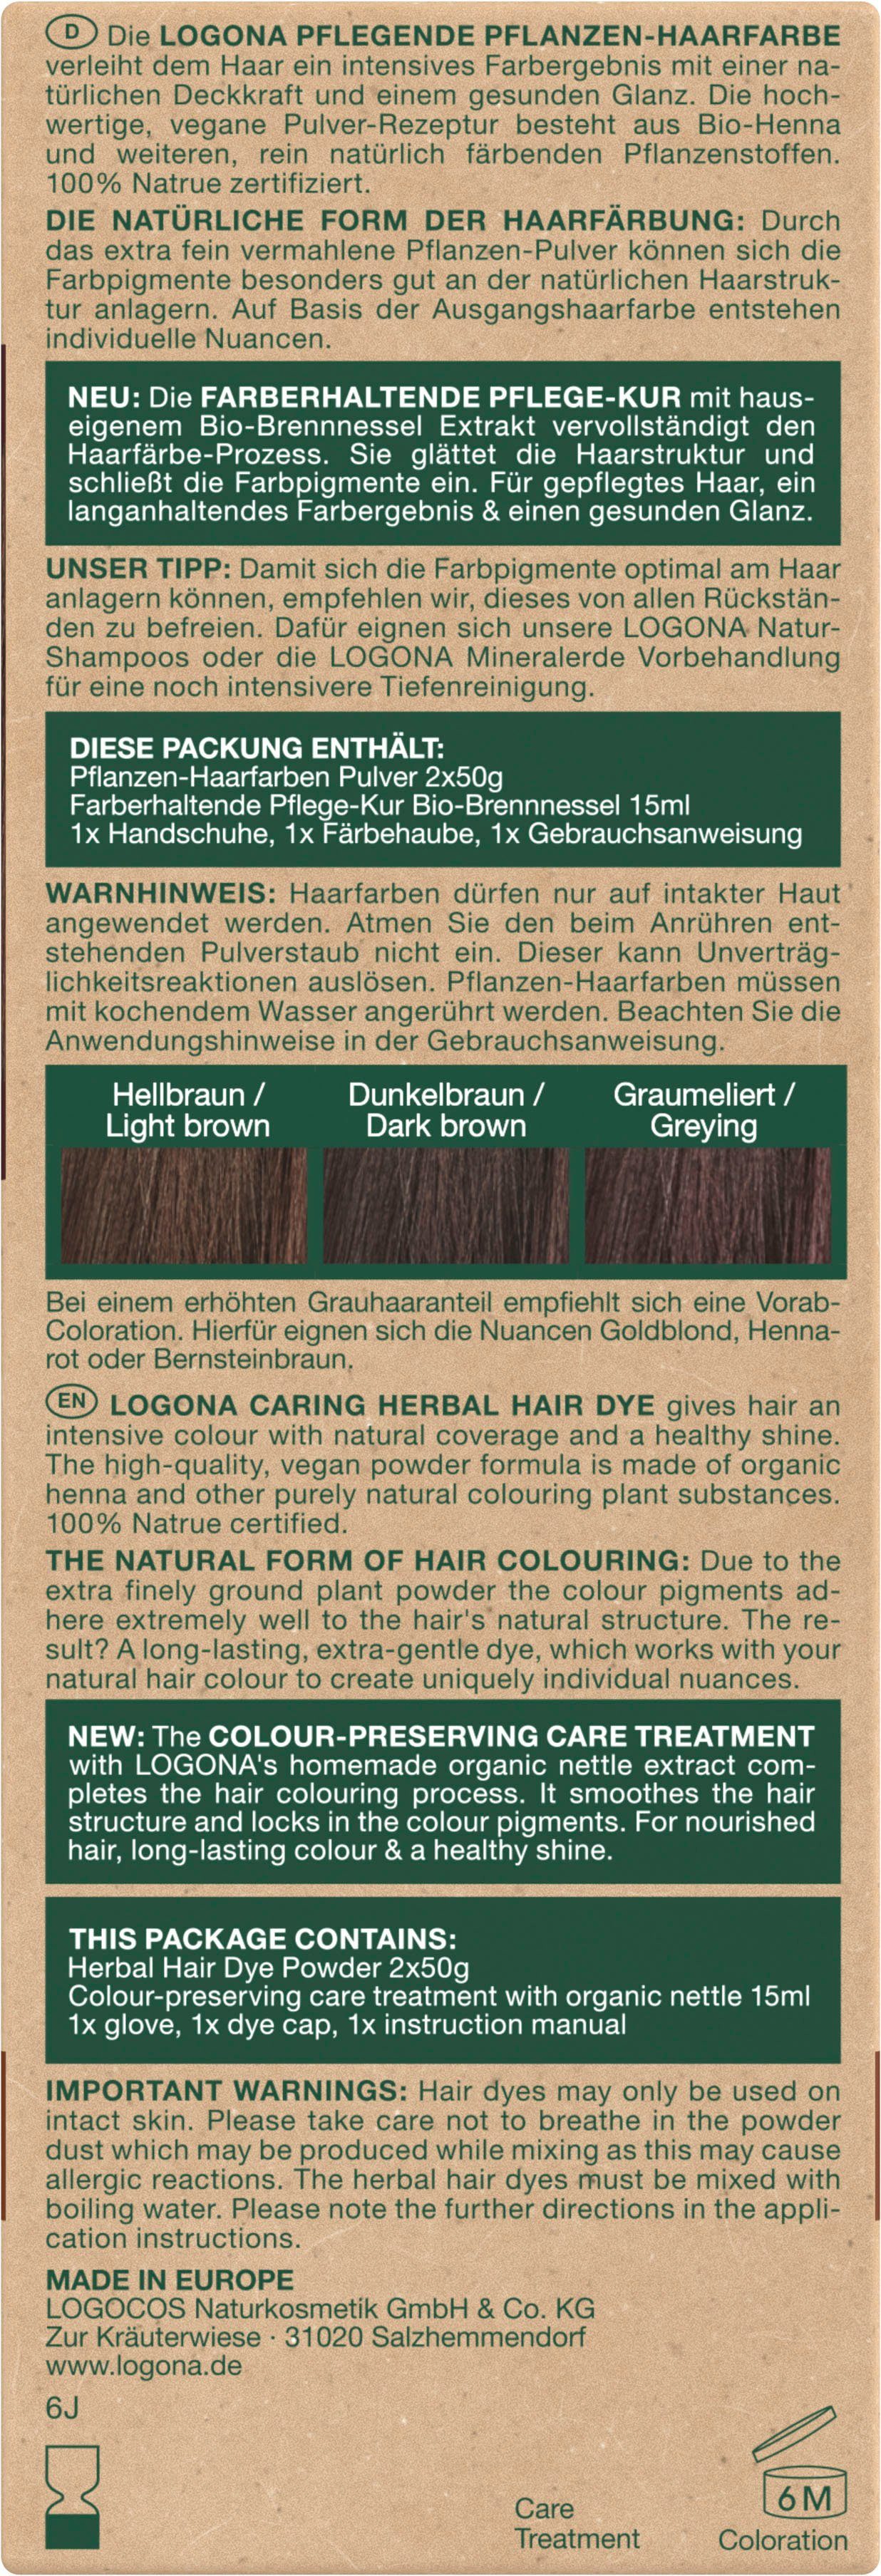 LOGONA Haarfarbe Pflanzen-Haarfarbe 10 Pulver Kaffeebraun